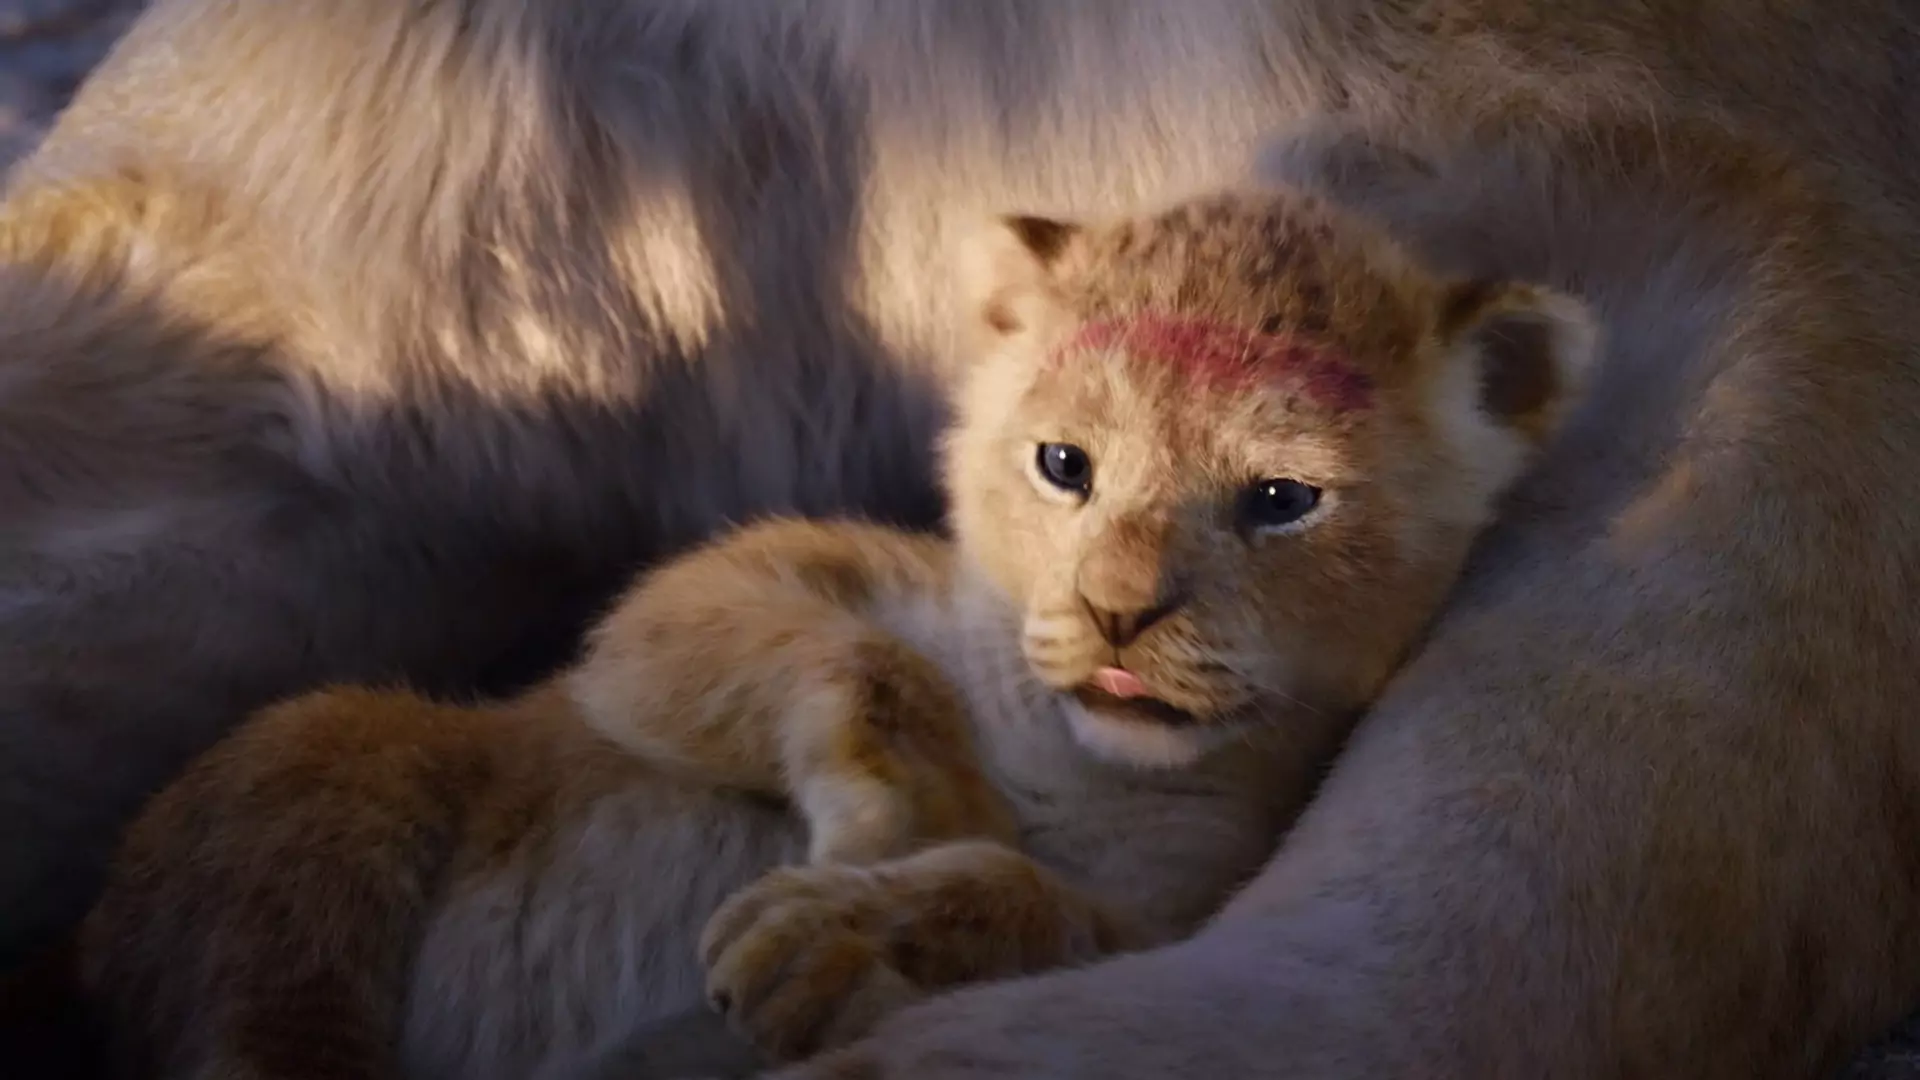 Lwica, która była inspiracją dla stworzenia Simby z "Króla Lwa" - jest tak samo urocza